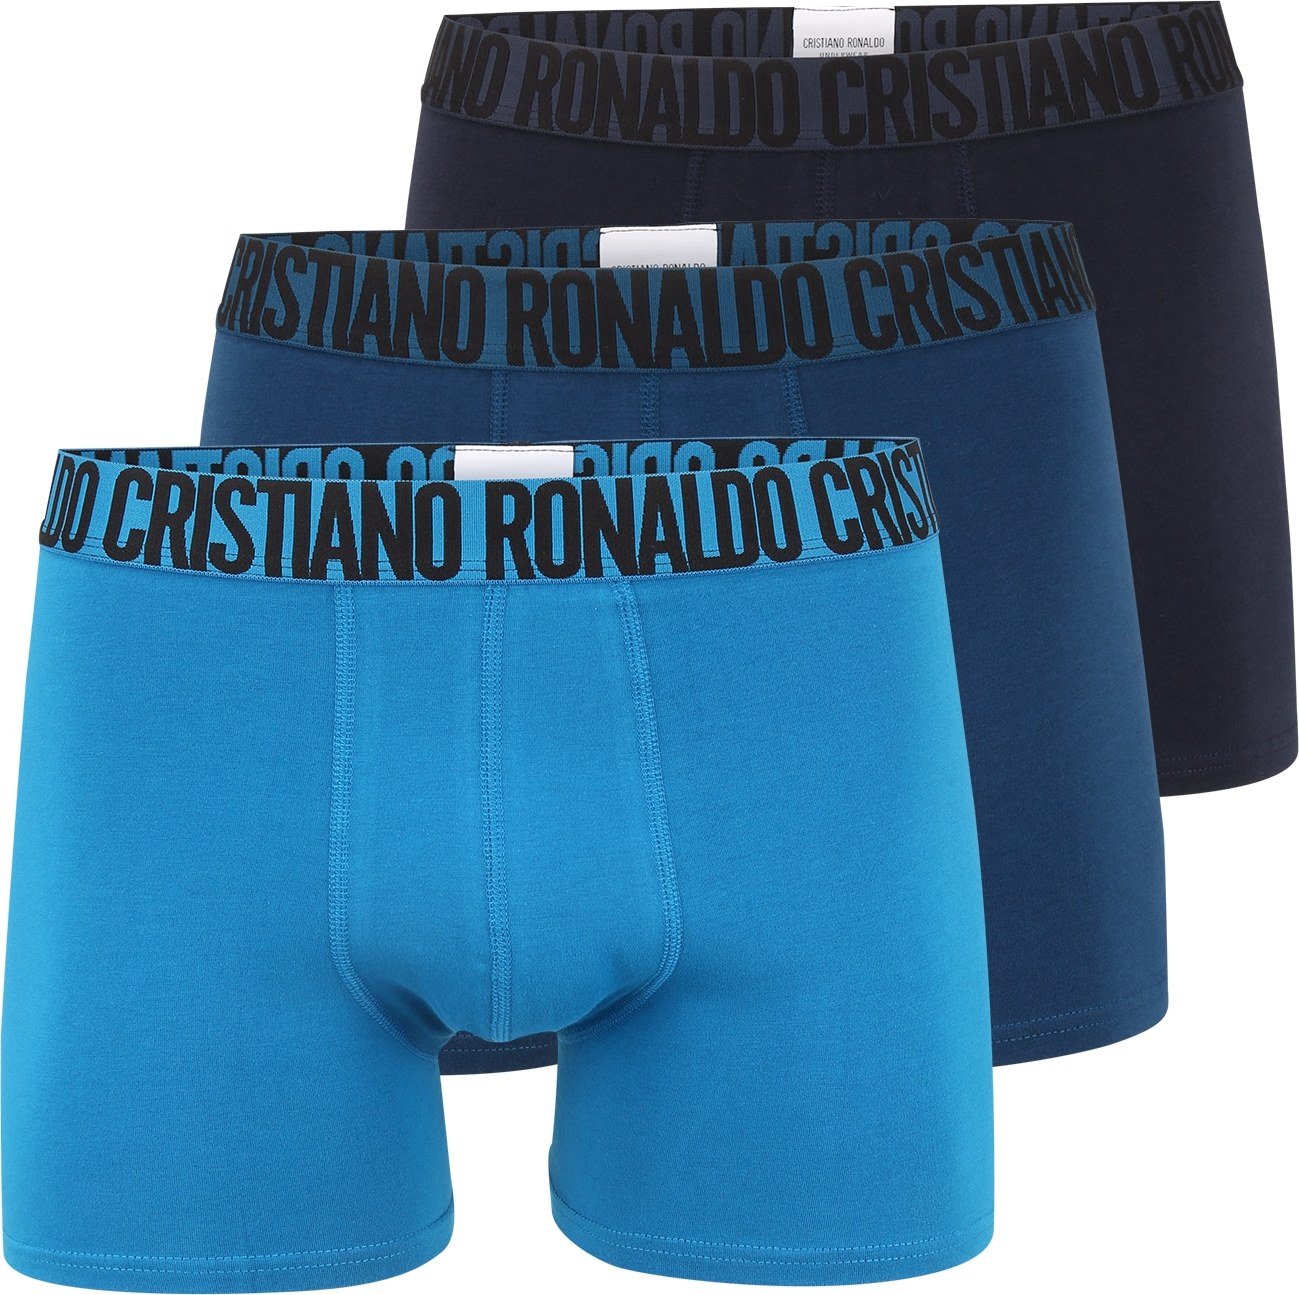 CR7 - Cristiano Ronaldo Boxerky nebeská modř / chladná modrá / tmavě modrá / černá